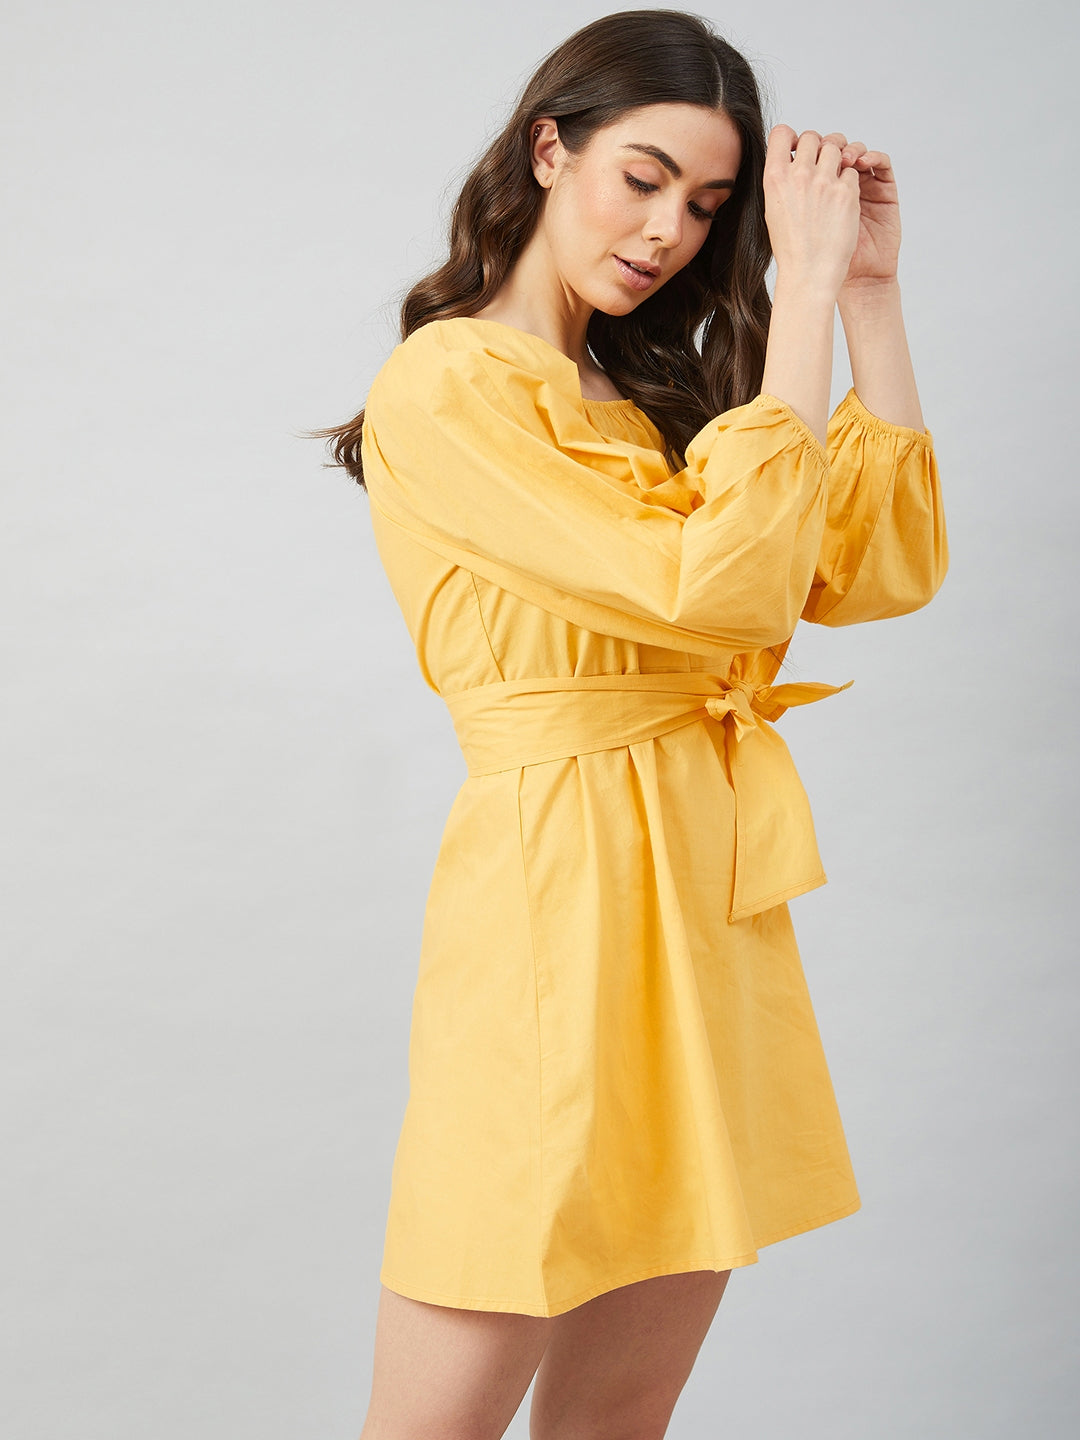 Athena Yellow cotton A-Line Dress - Athena Lifestyle